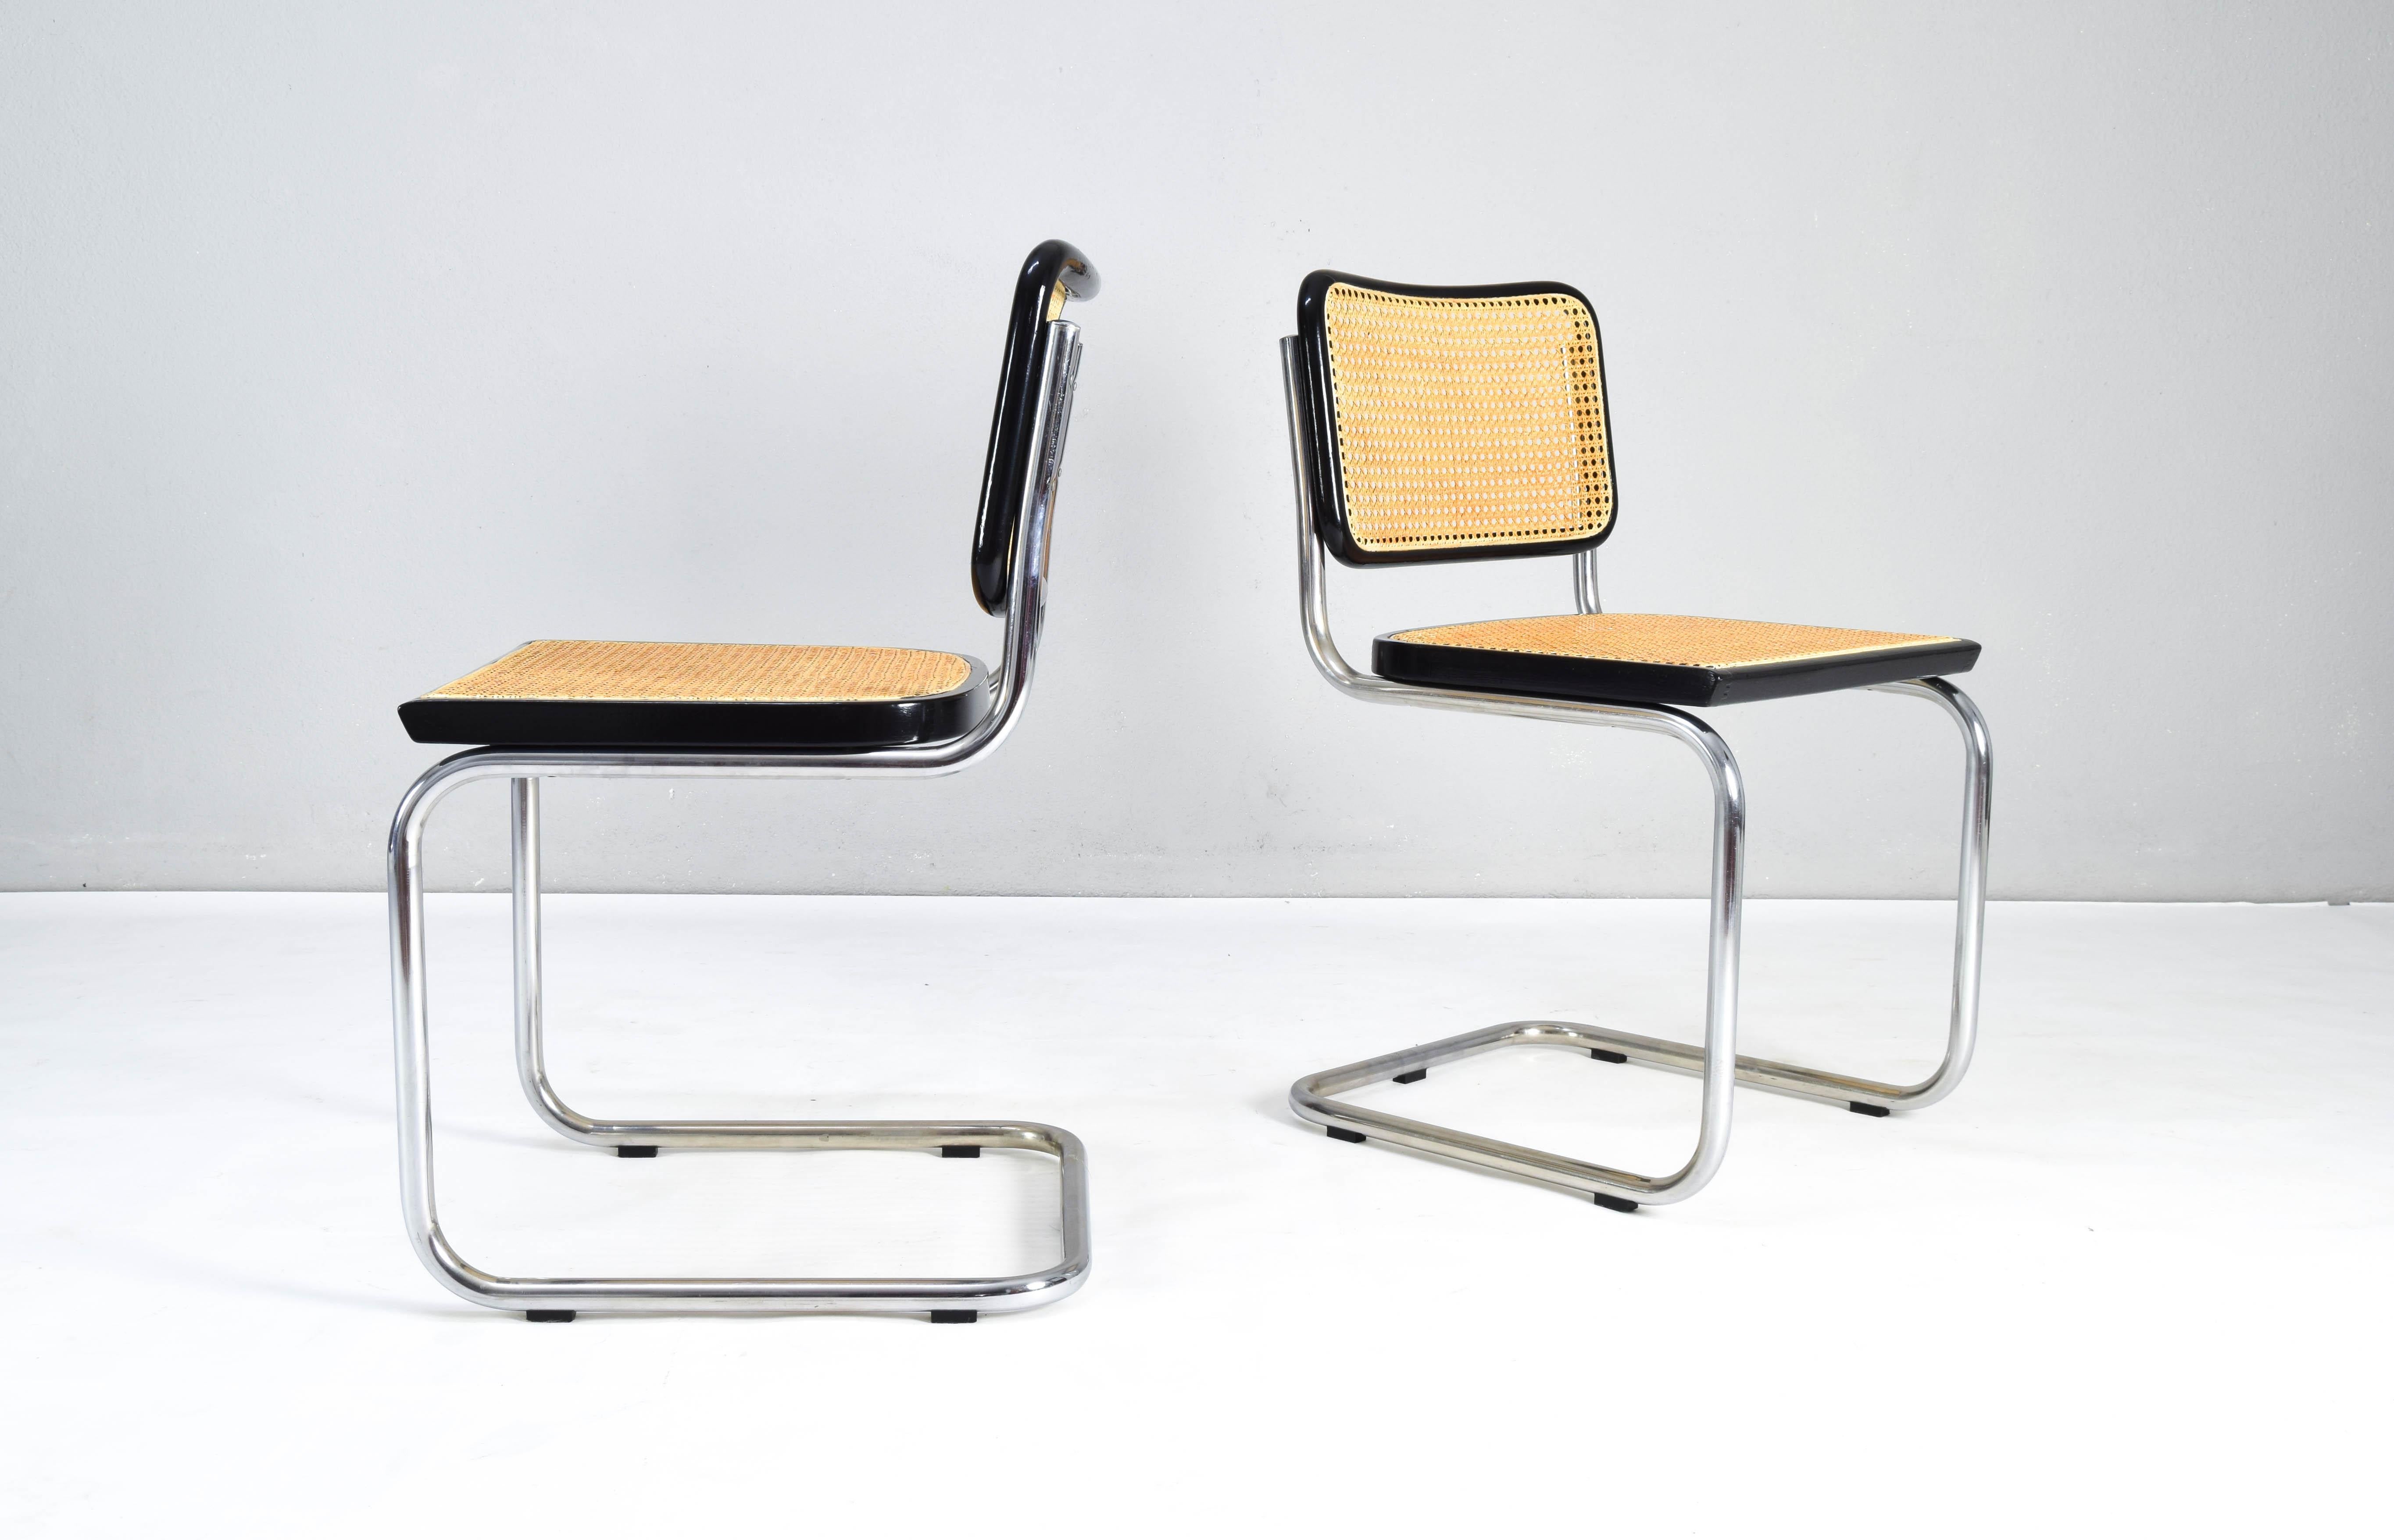 Ensemble de deux chaises Cesca, modèle B32, fabriquées en Italie dans les années 1970. Cadres en hêtre laqué noir et grille viennoise naturelle. 
Le siège de la grille a été remis à neuf. 
Très bon état général.


Mesures : Hauteur totale 84